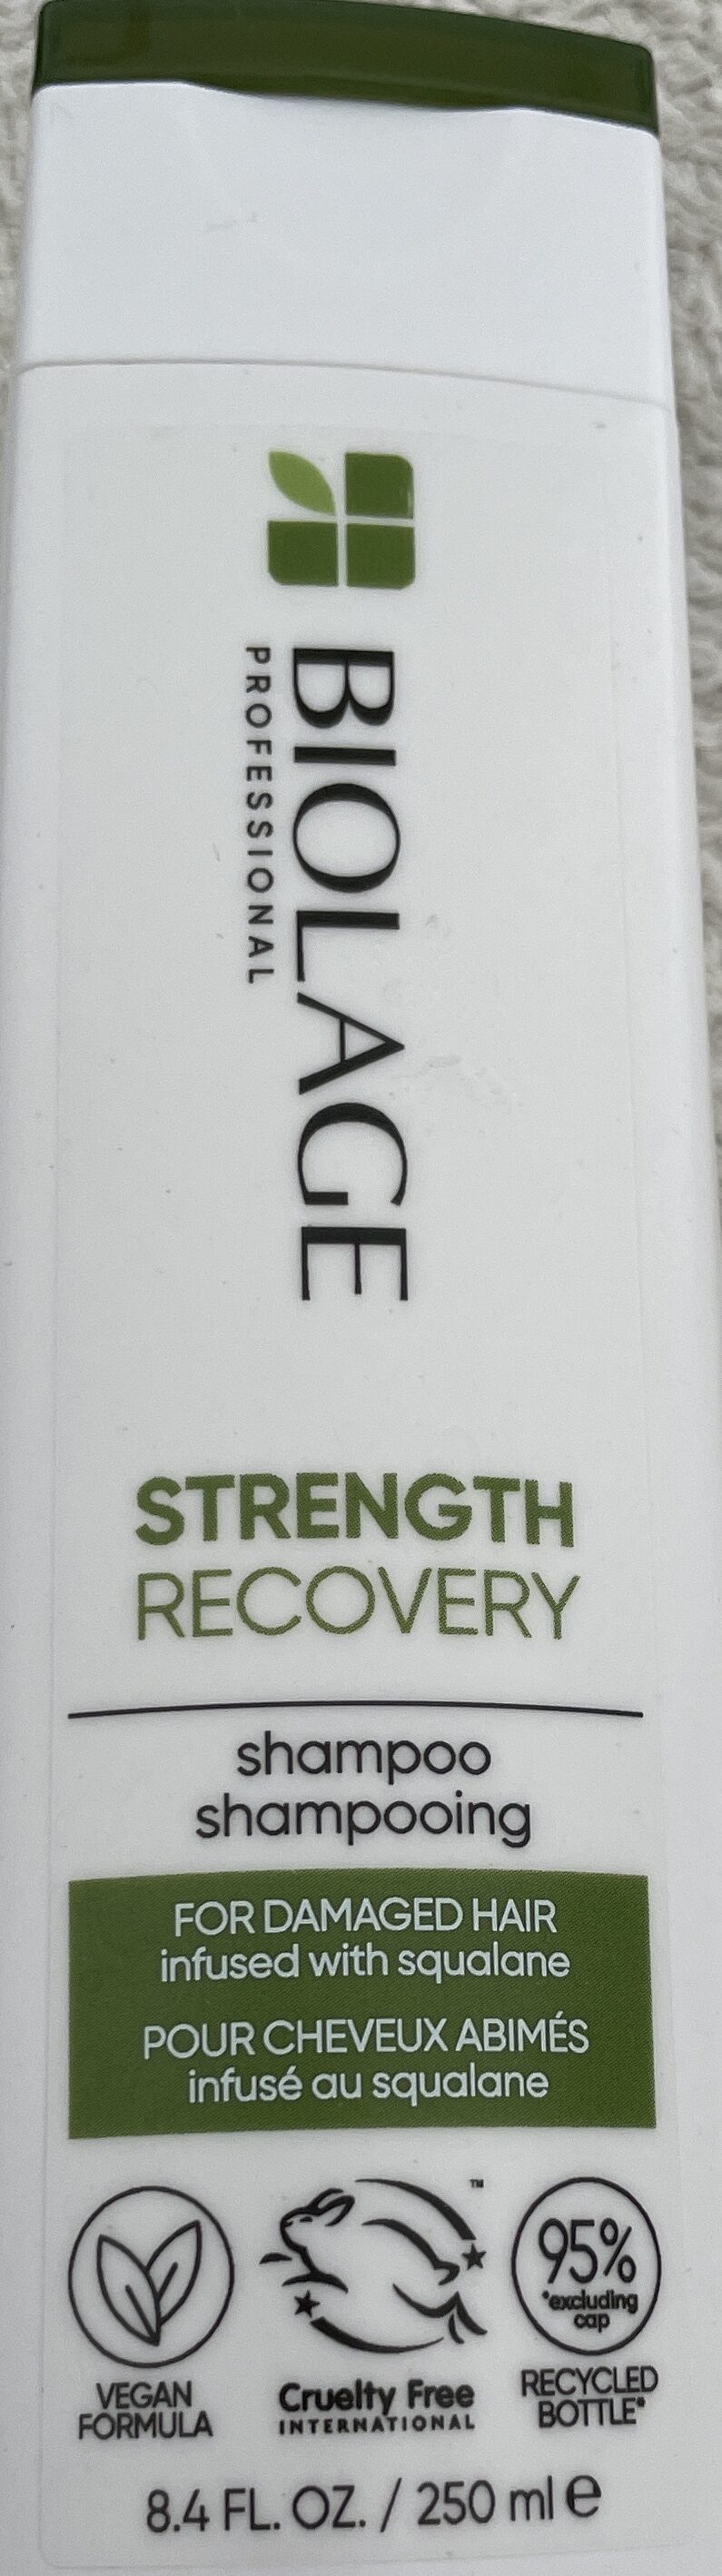 Strength Recovery Shampoo - Produkt - de